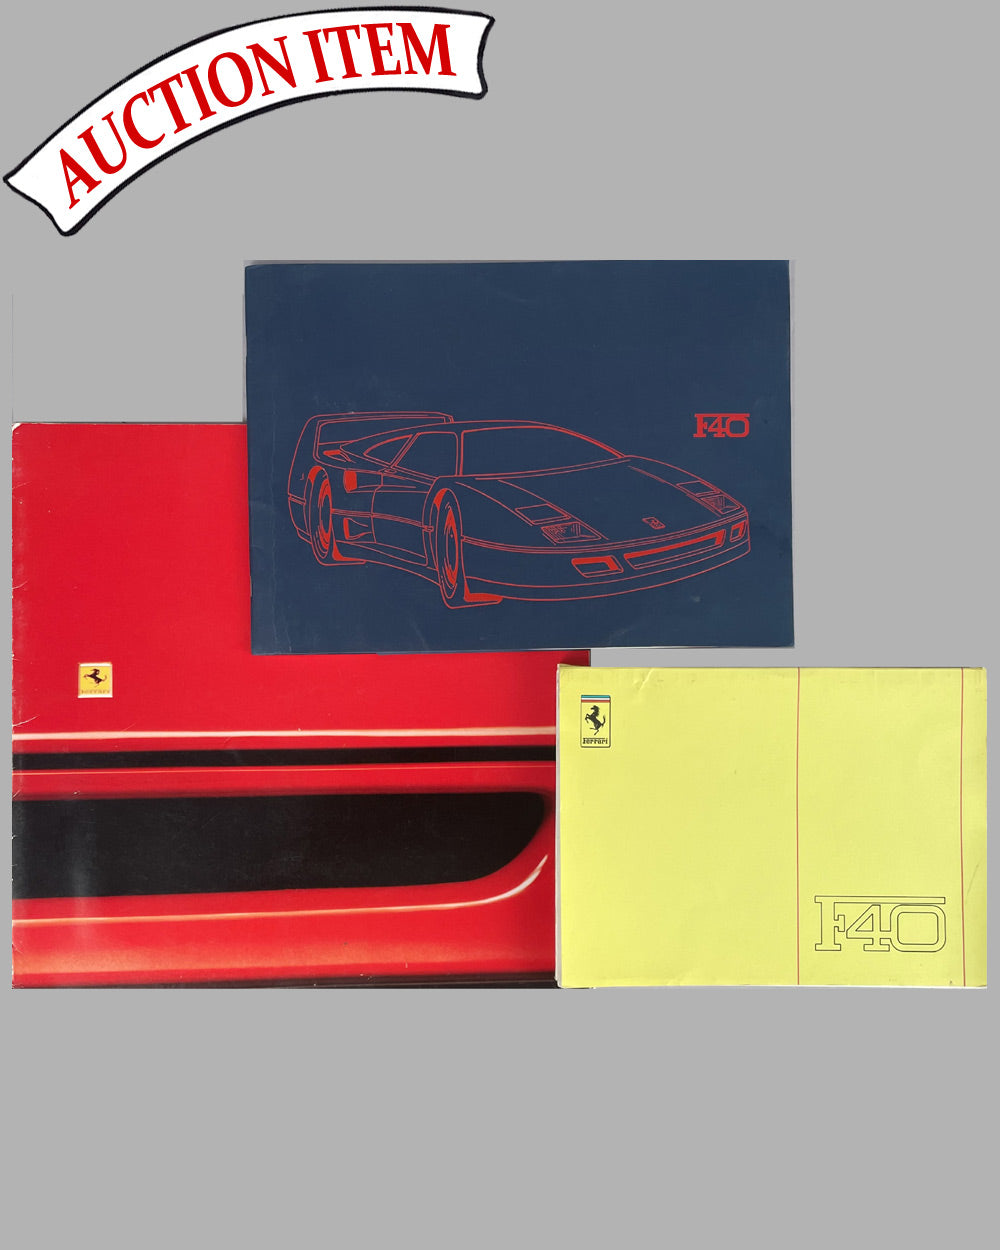 2 - Three Ferrari F40 factory publications